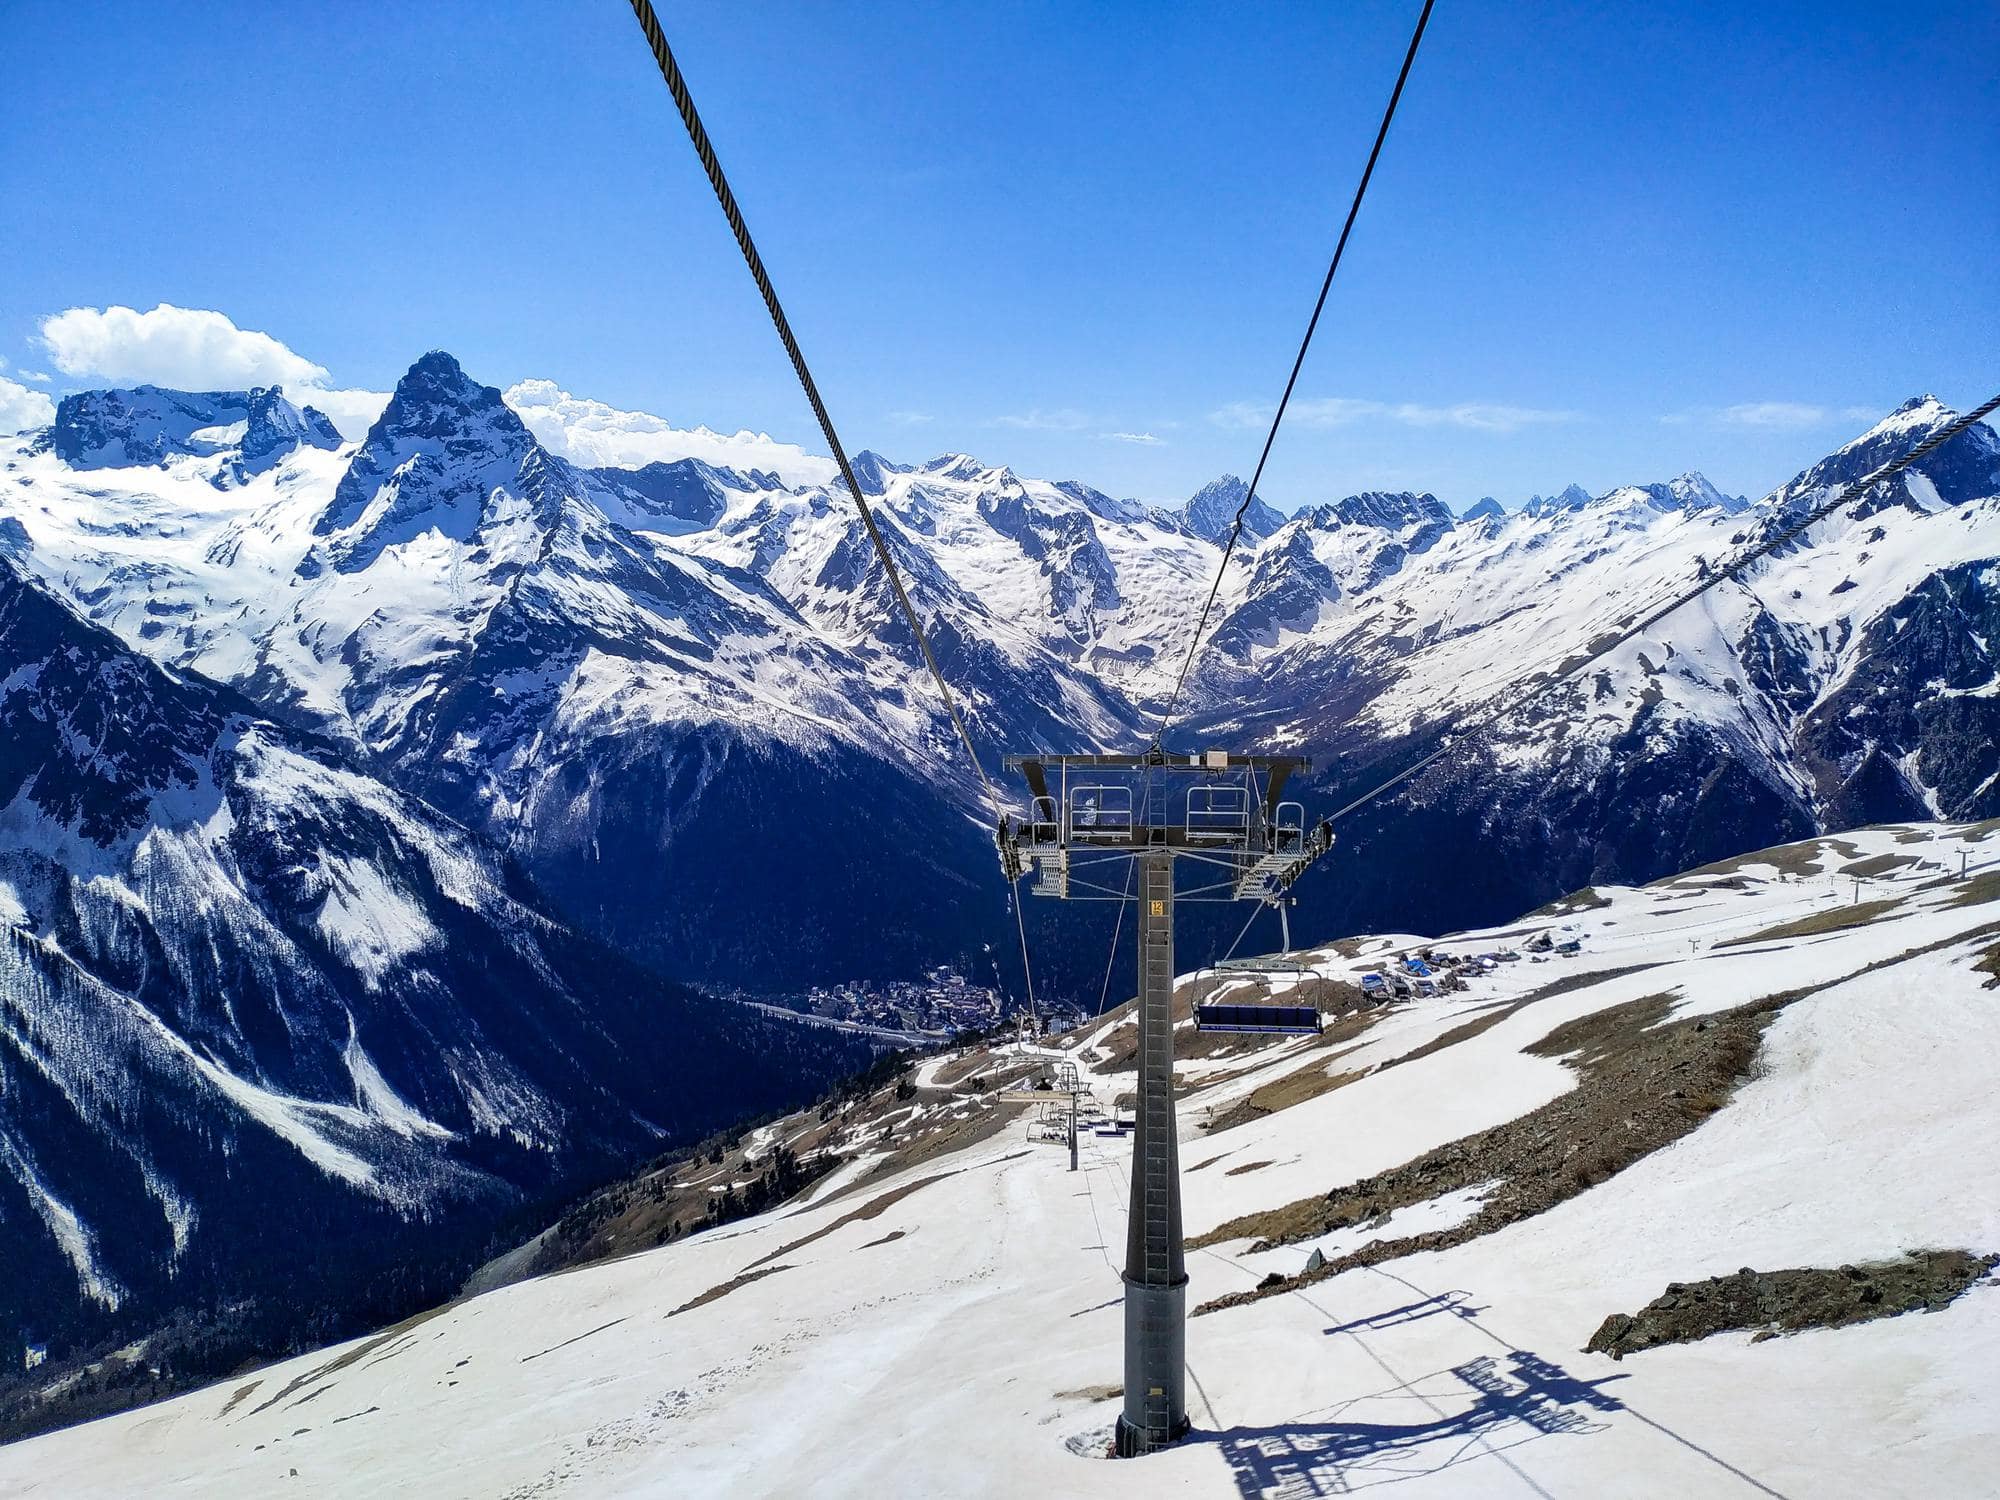 Ausblick auf eine Seilbahn talwärts, um zu veranschaulichen, dass Solar-Seilbahnen zum nachhaltig Skifahren beitragen können.